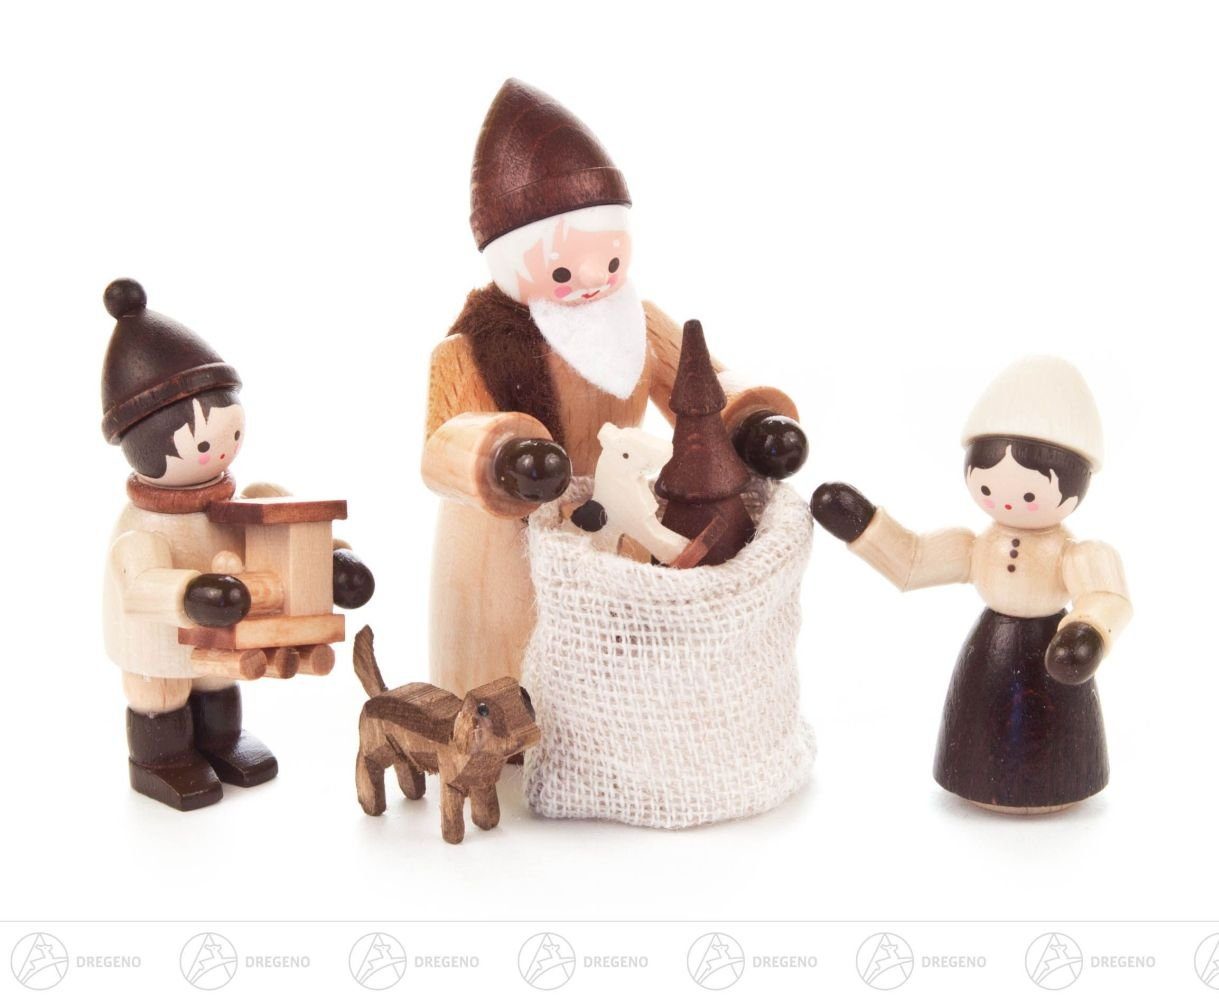 Dregeno Erzgebirge Weihnachtsfigur Weihnachtliche Miniatur Bescherung natur (4) Höhe ca 6,5 cm NEU, mit großem Geschenkesack und Hund